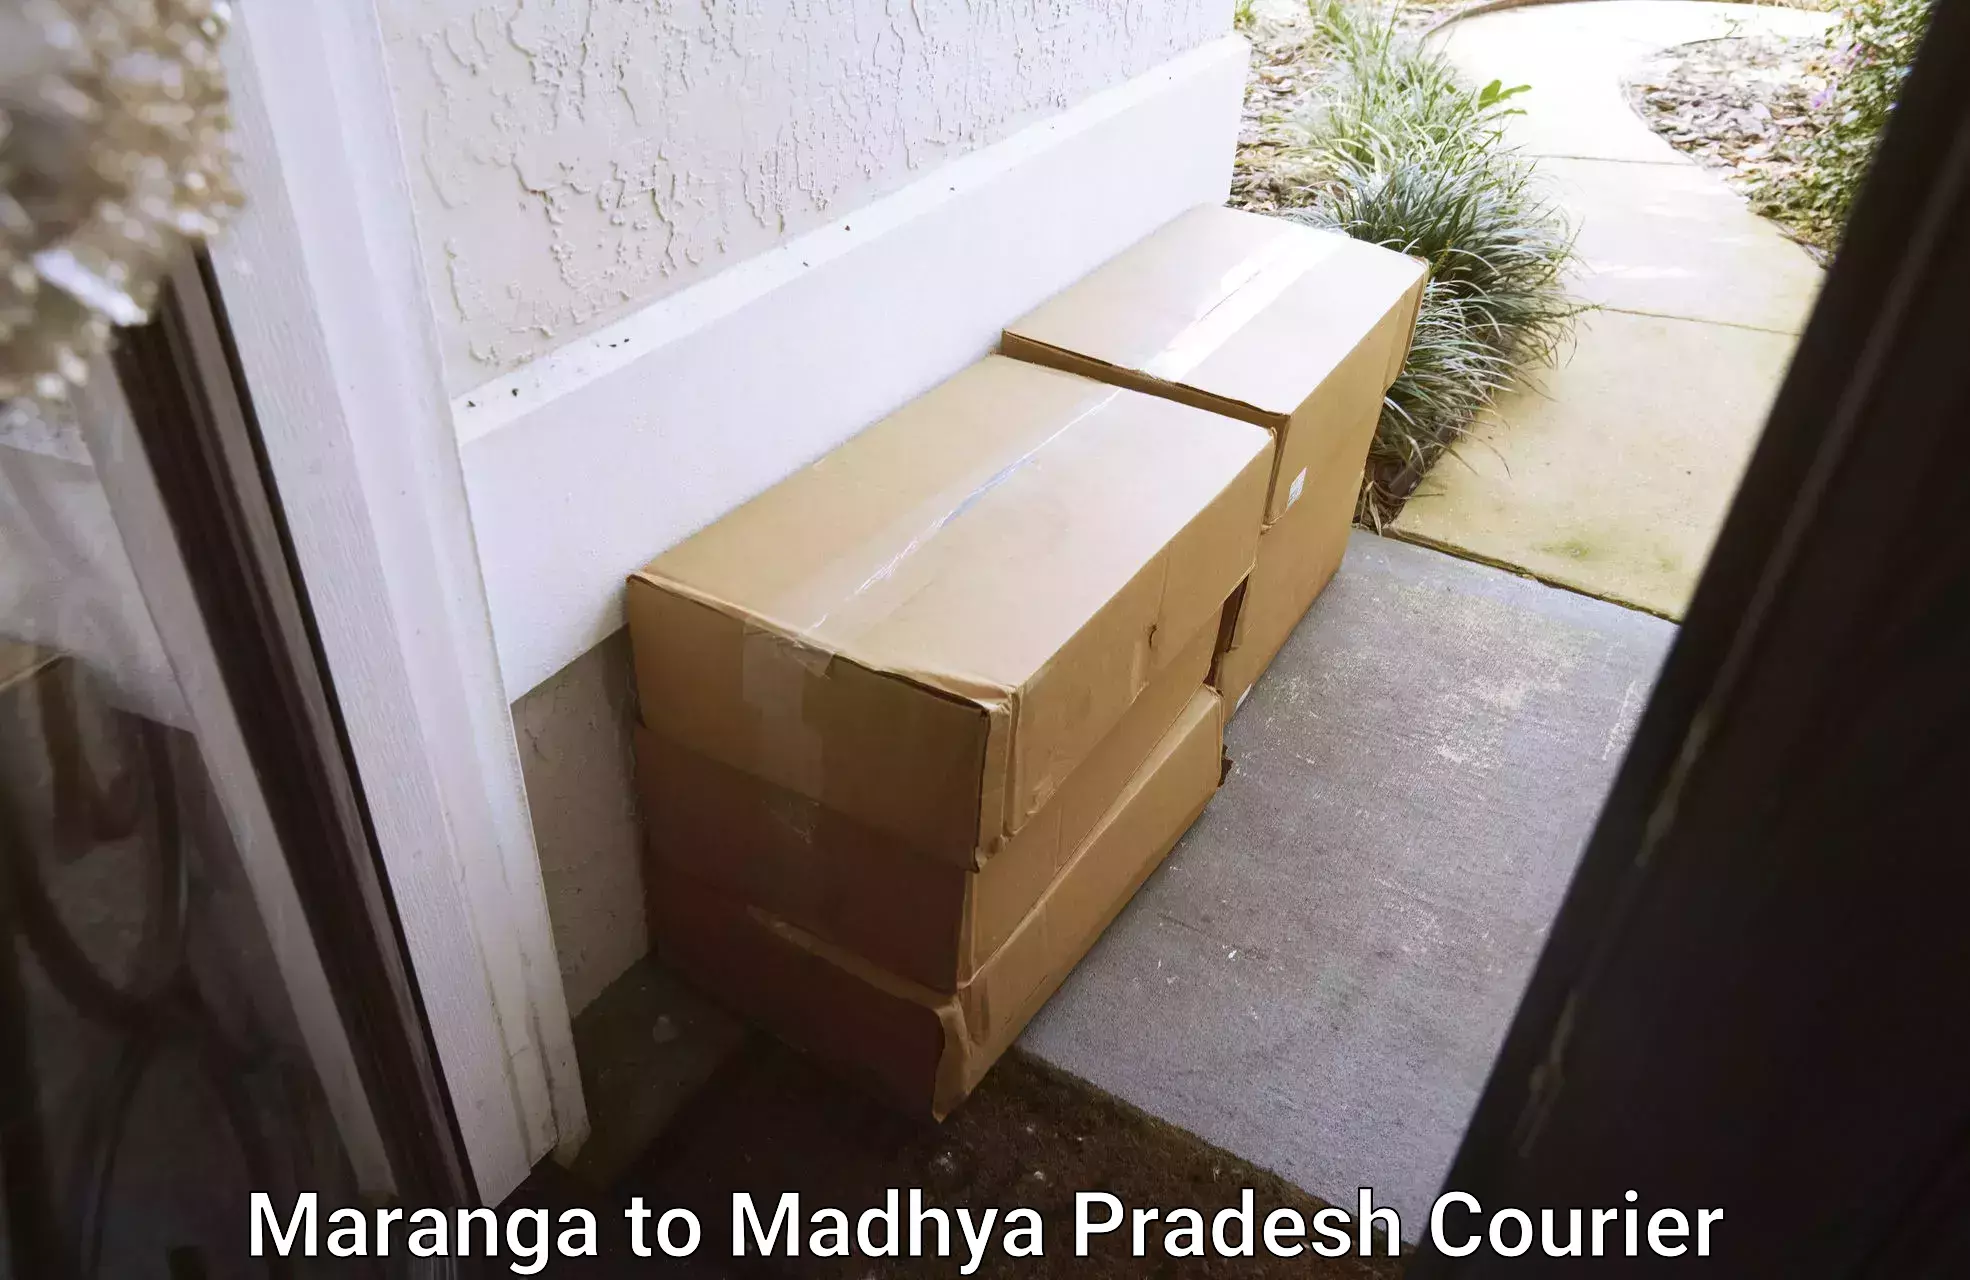 Full-service furniture transport Maranga to Madhya Pradesh